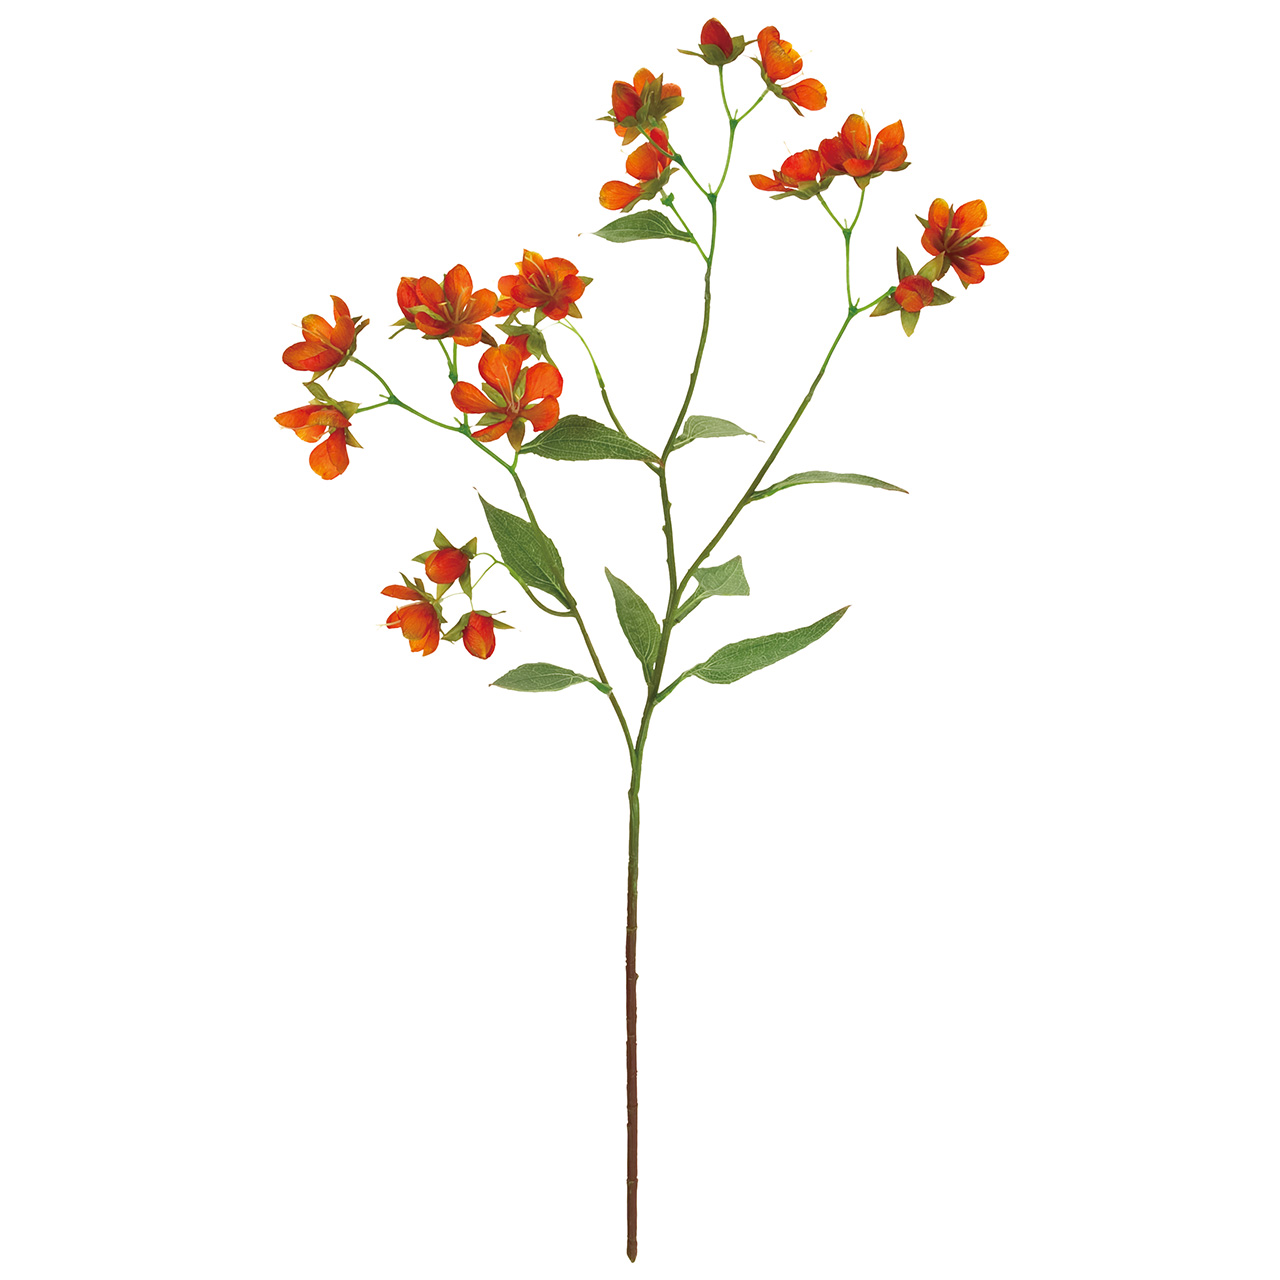 マイフラ 通販 Magiq バタフライフラワー オレンジ アーティフィシャルフラワー 造花 Fm トロピカルフラワー 花径 約4 5 6 5 全長 約cm オレンジ Magiq アーティフィシャルフラワー 造花 全国にmagiq 花器 花資材などをお届けします